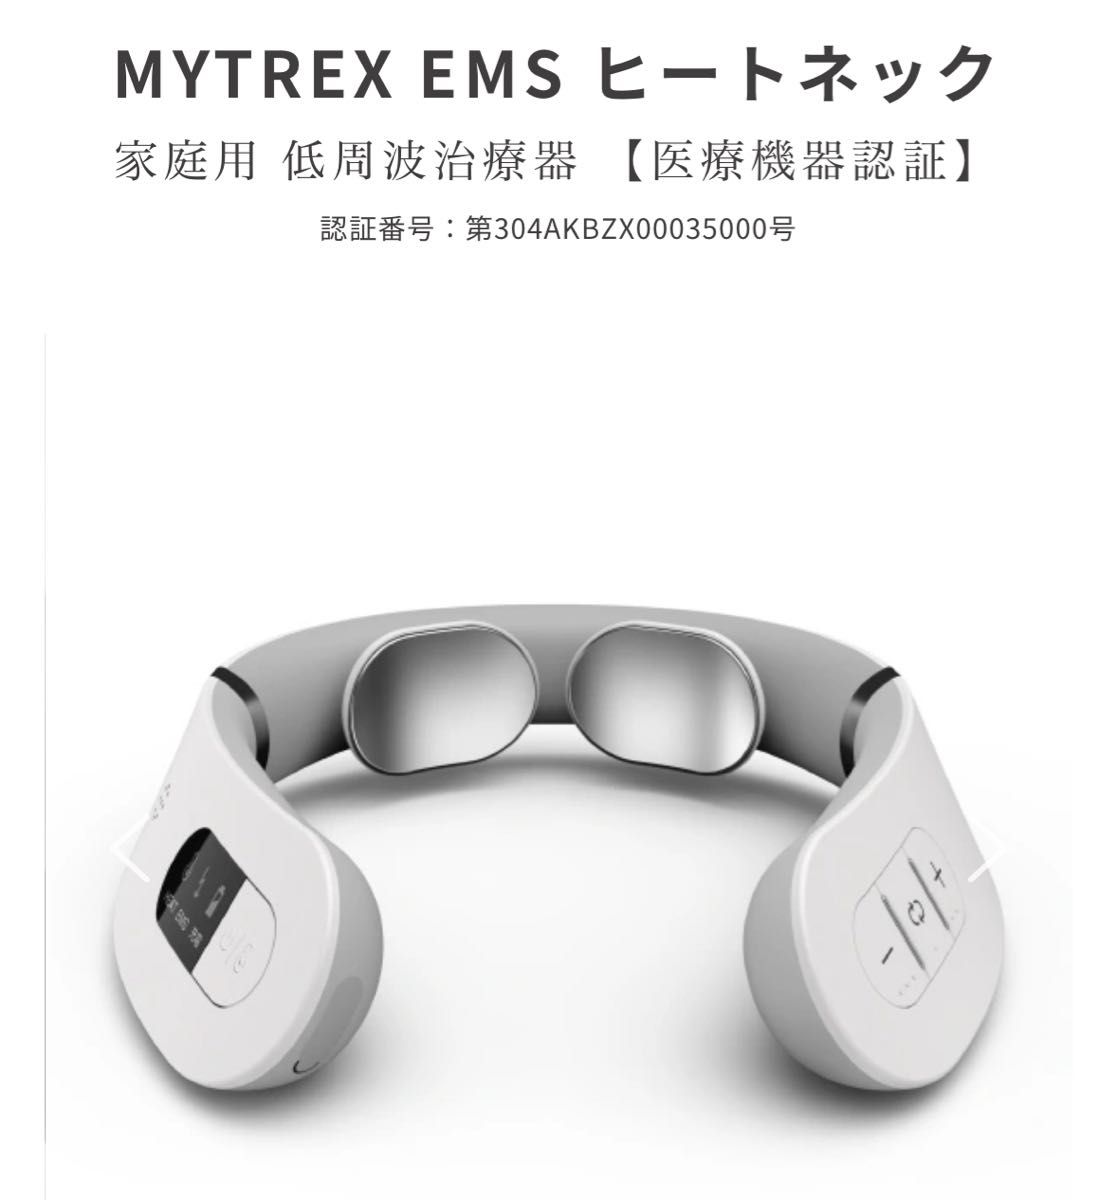 MYTREX EMS ヒートネック家庭用 低周波治療器 【医療機器認証】